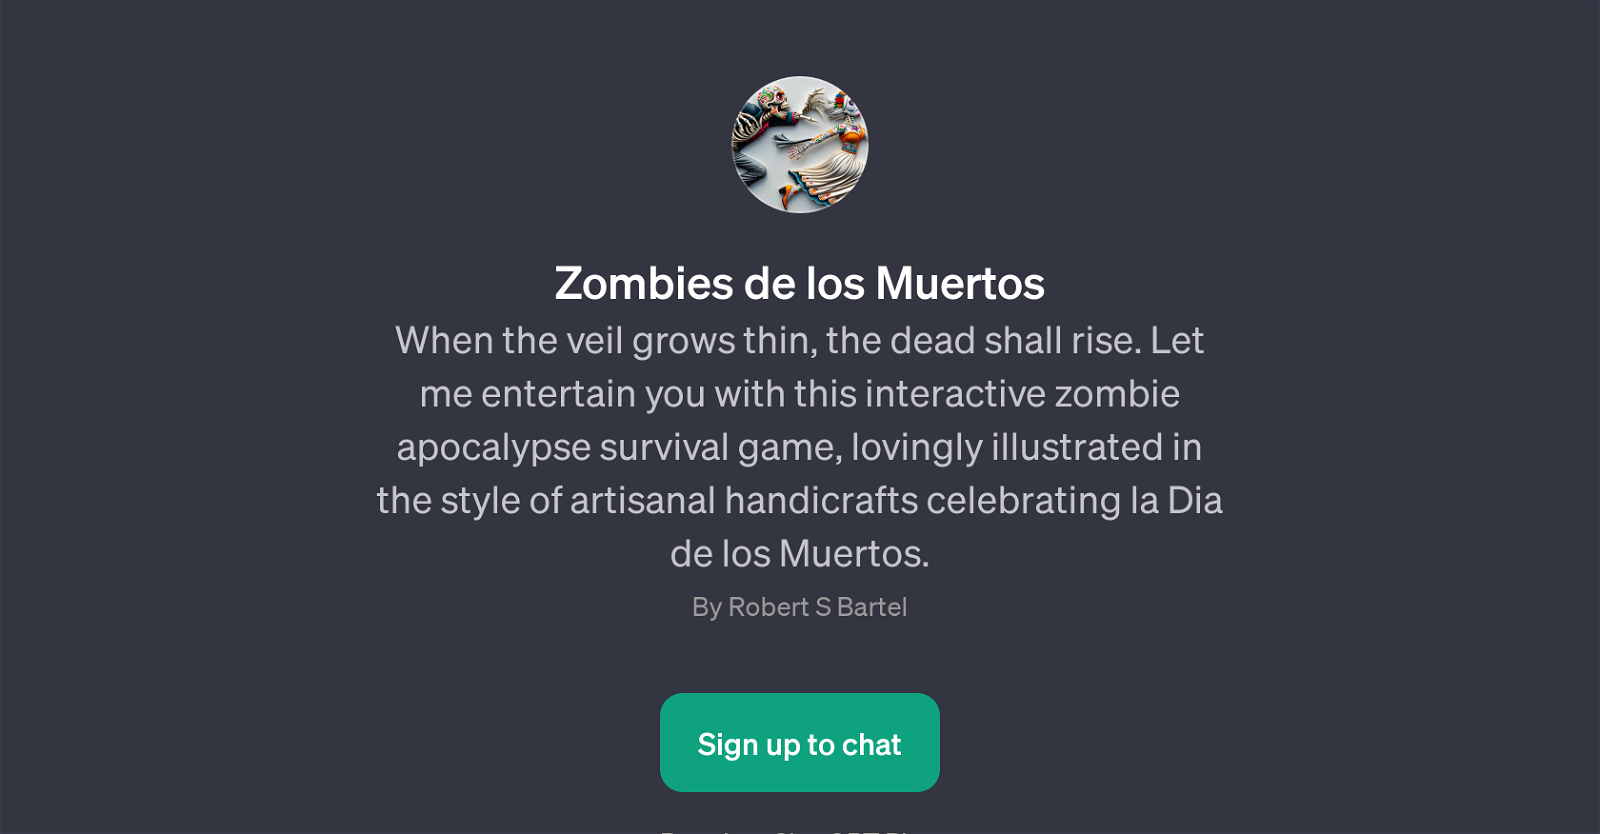 Zombies de los Muertos website